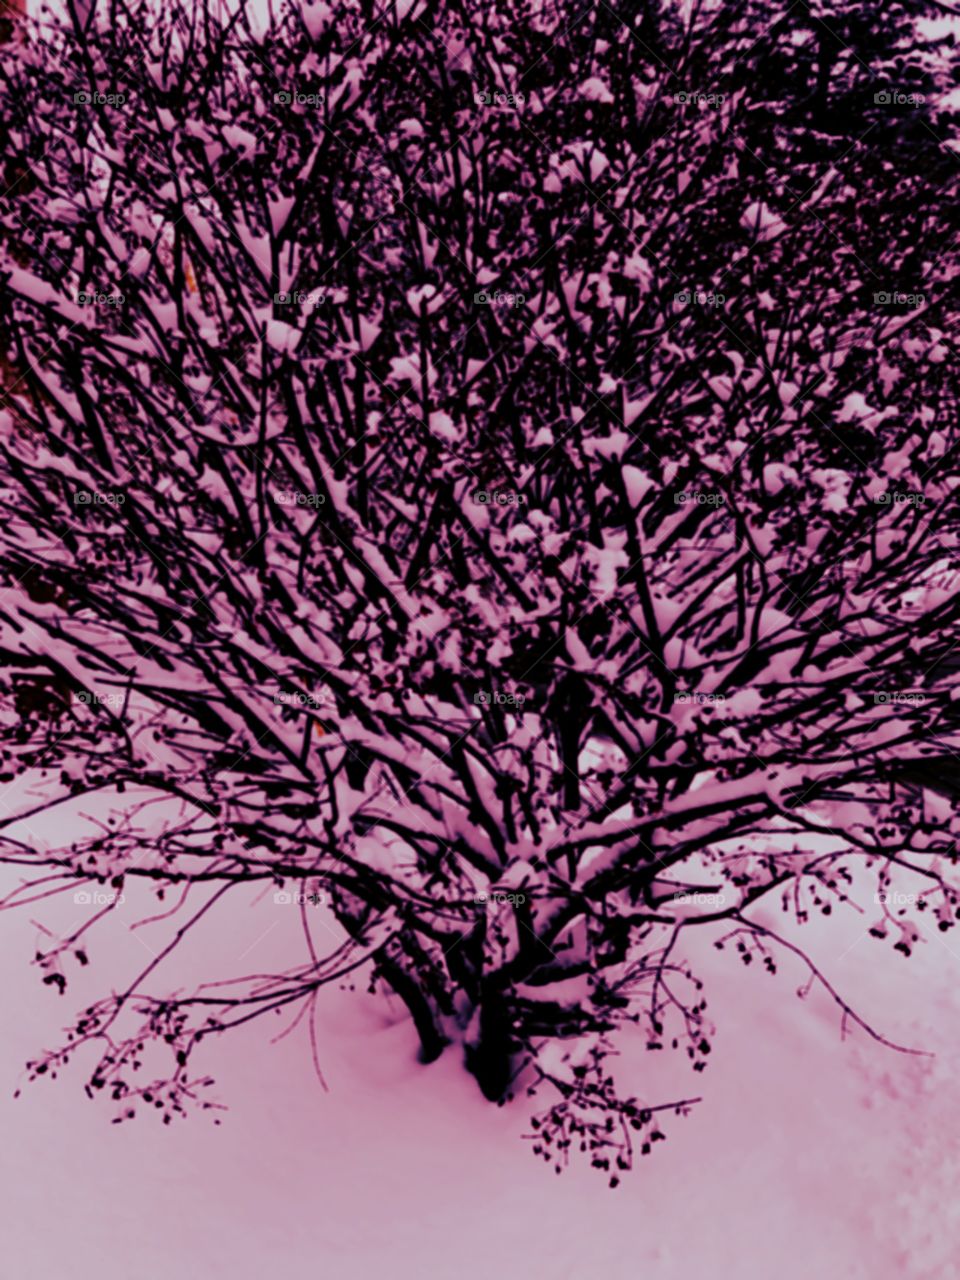 Snowy bush in purple.